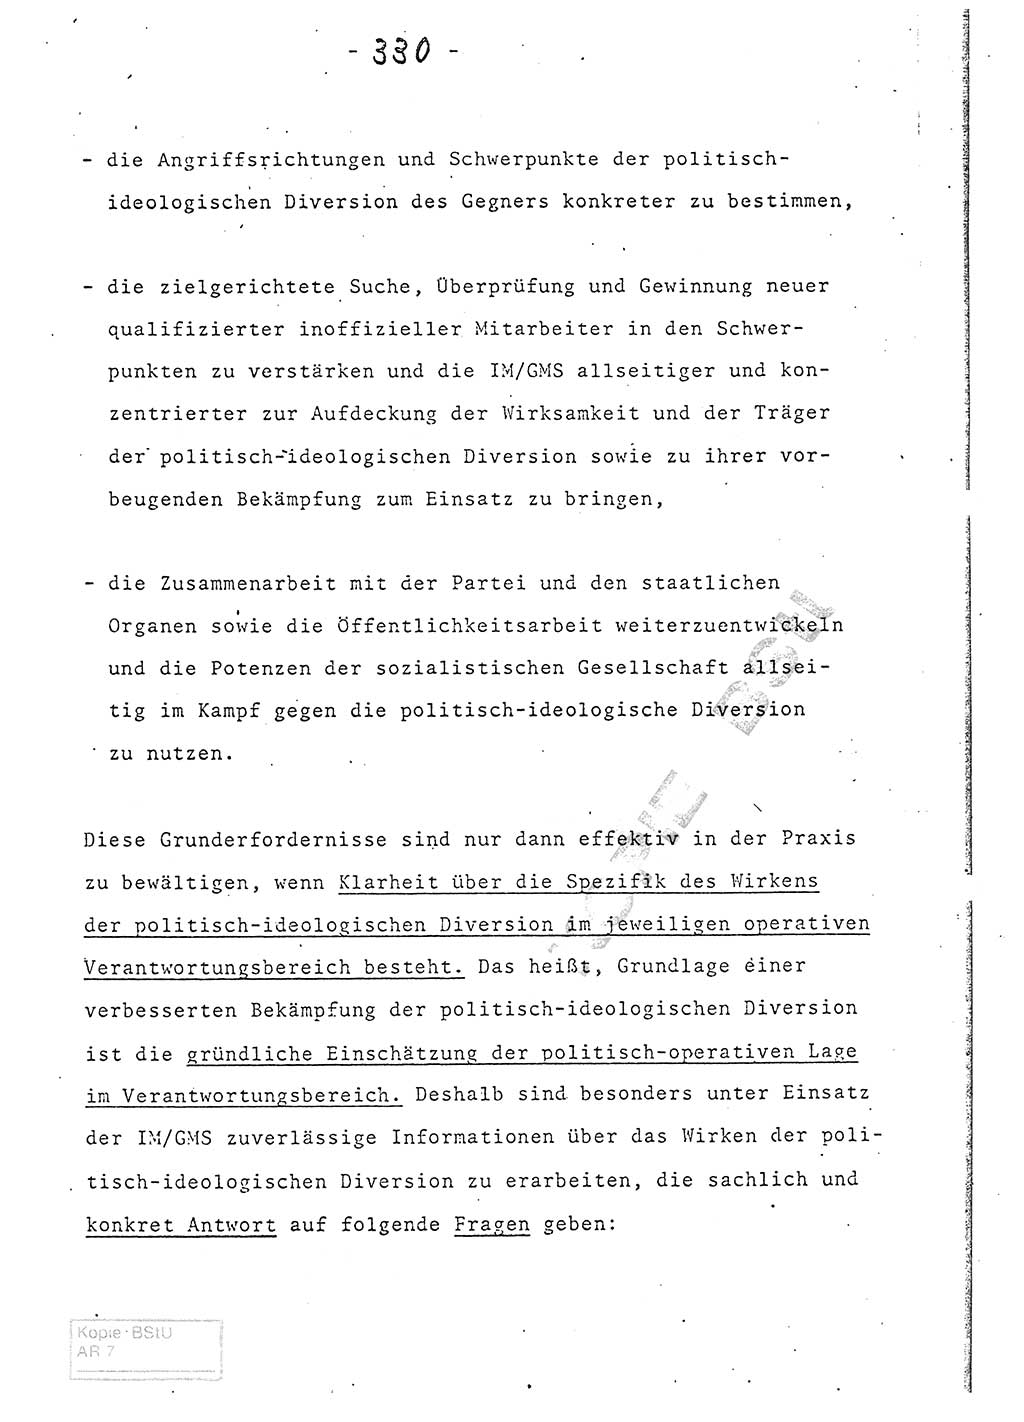 Referat (Entwurf) des Genossen Minister (Generaloberst Erich Mielke) auf der Dienstkonferenz 1972, Ministerium für Staatssicherheit (MfS) [Deutsche Demokratische Republik (DDR)], Der Minister, Geheime Verschlußsache (GVS) 008-150/72, Berlin 25.2.1972, Seite 330 (Ref. Entw. DK MfS DDR Min. GVS 008-150/72 1972, S. 330)